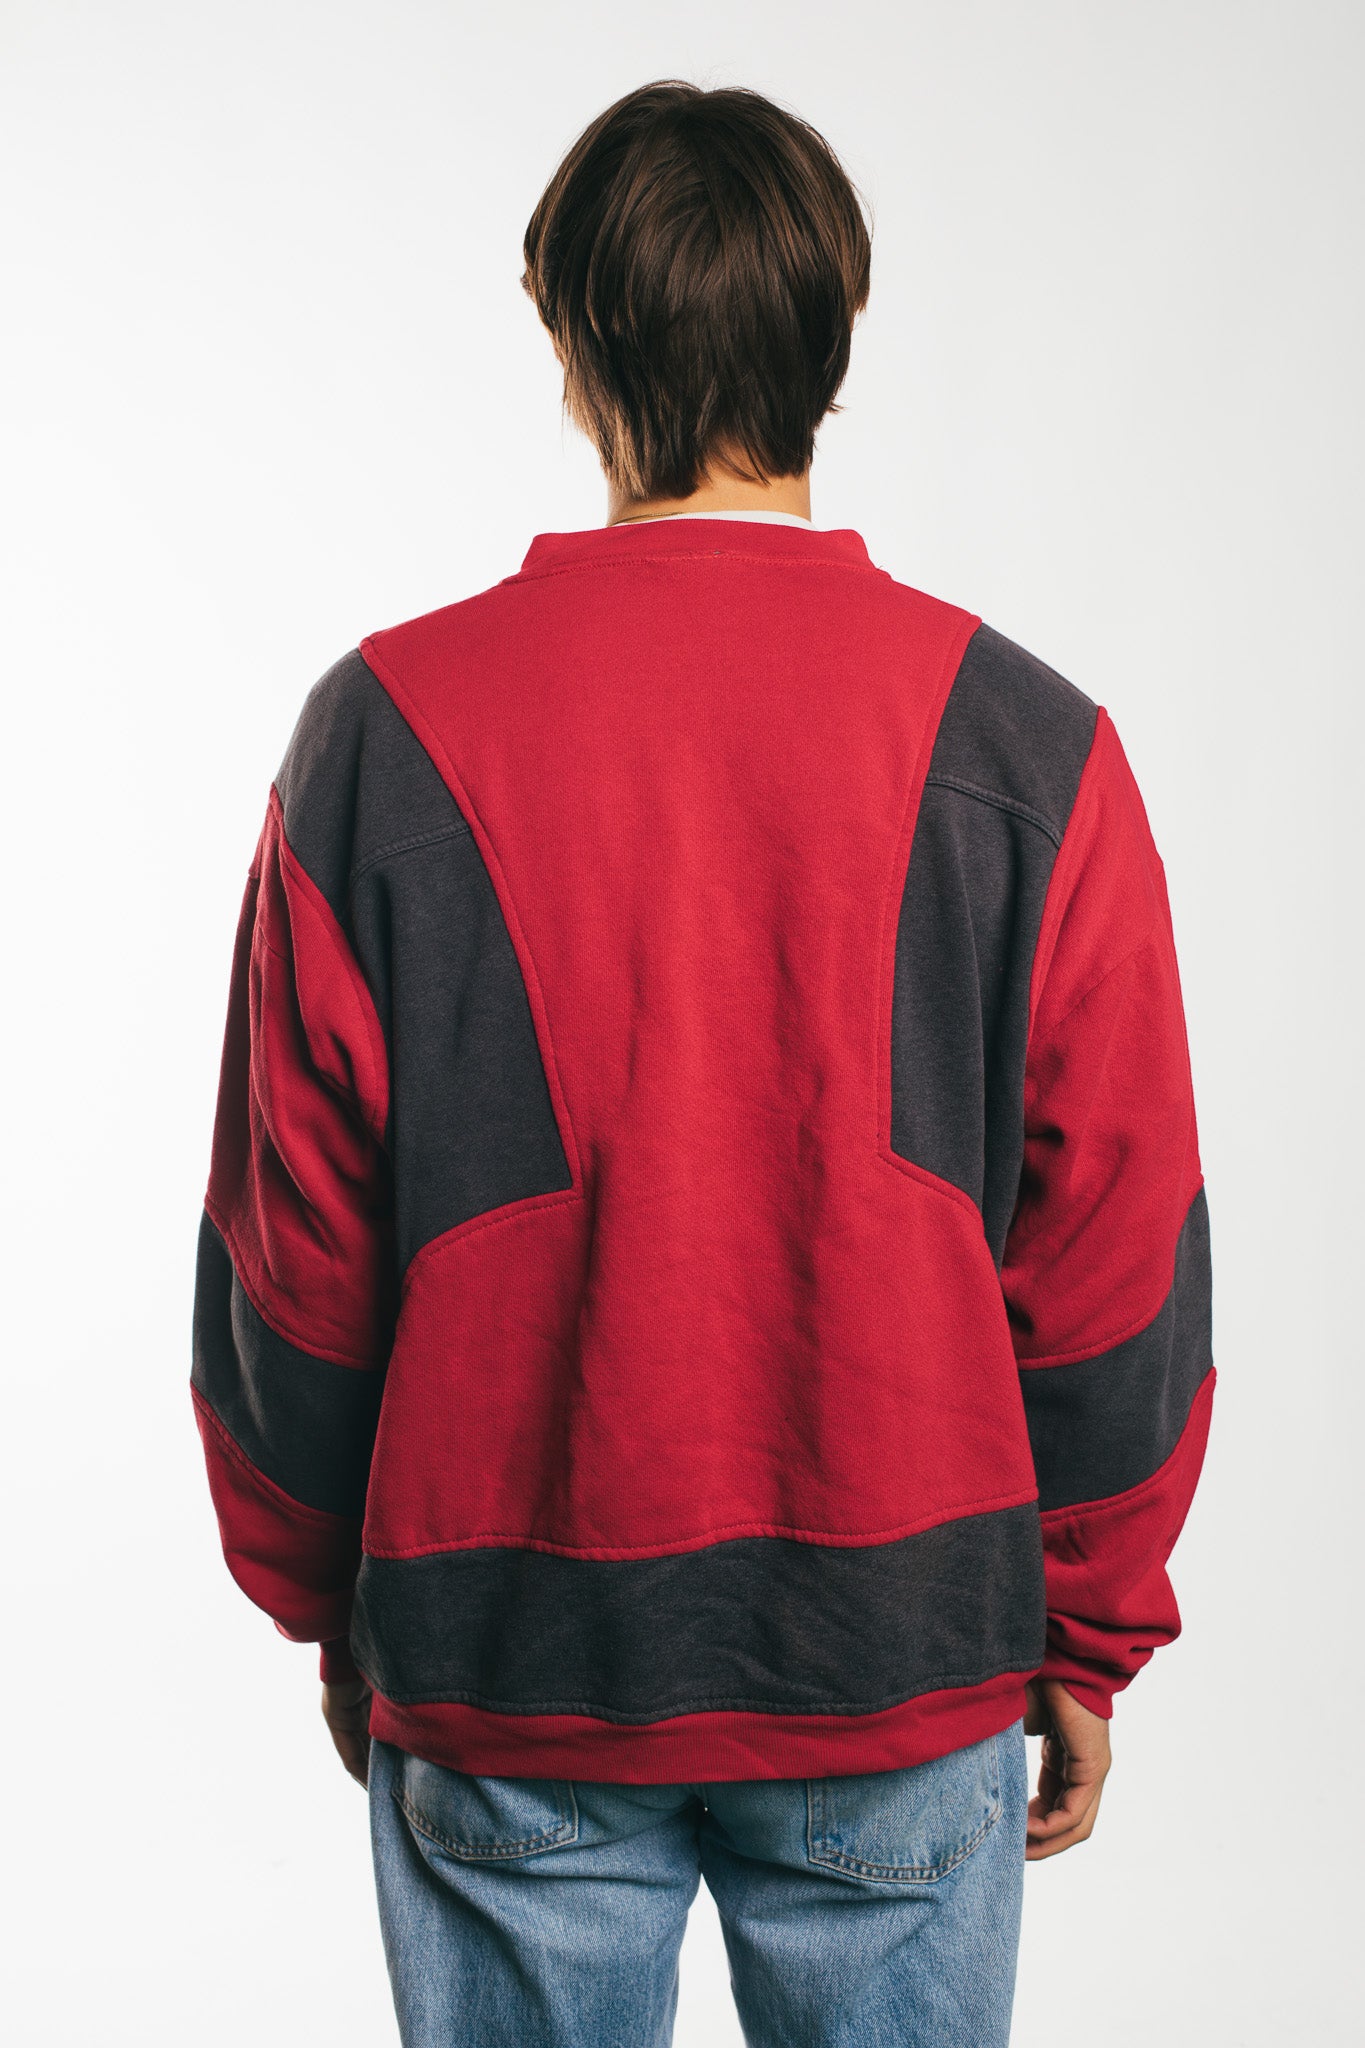 Puma - Sweatshirt (XL)